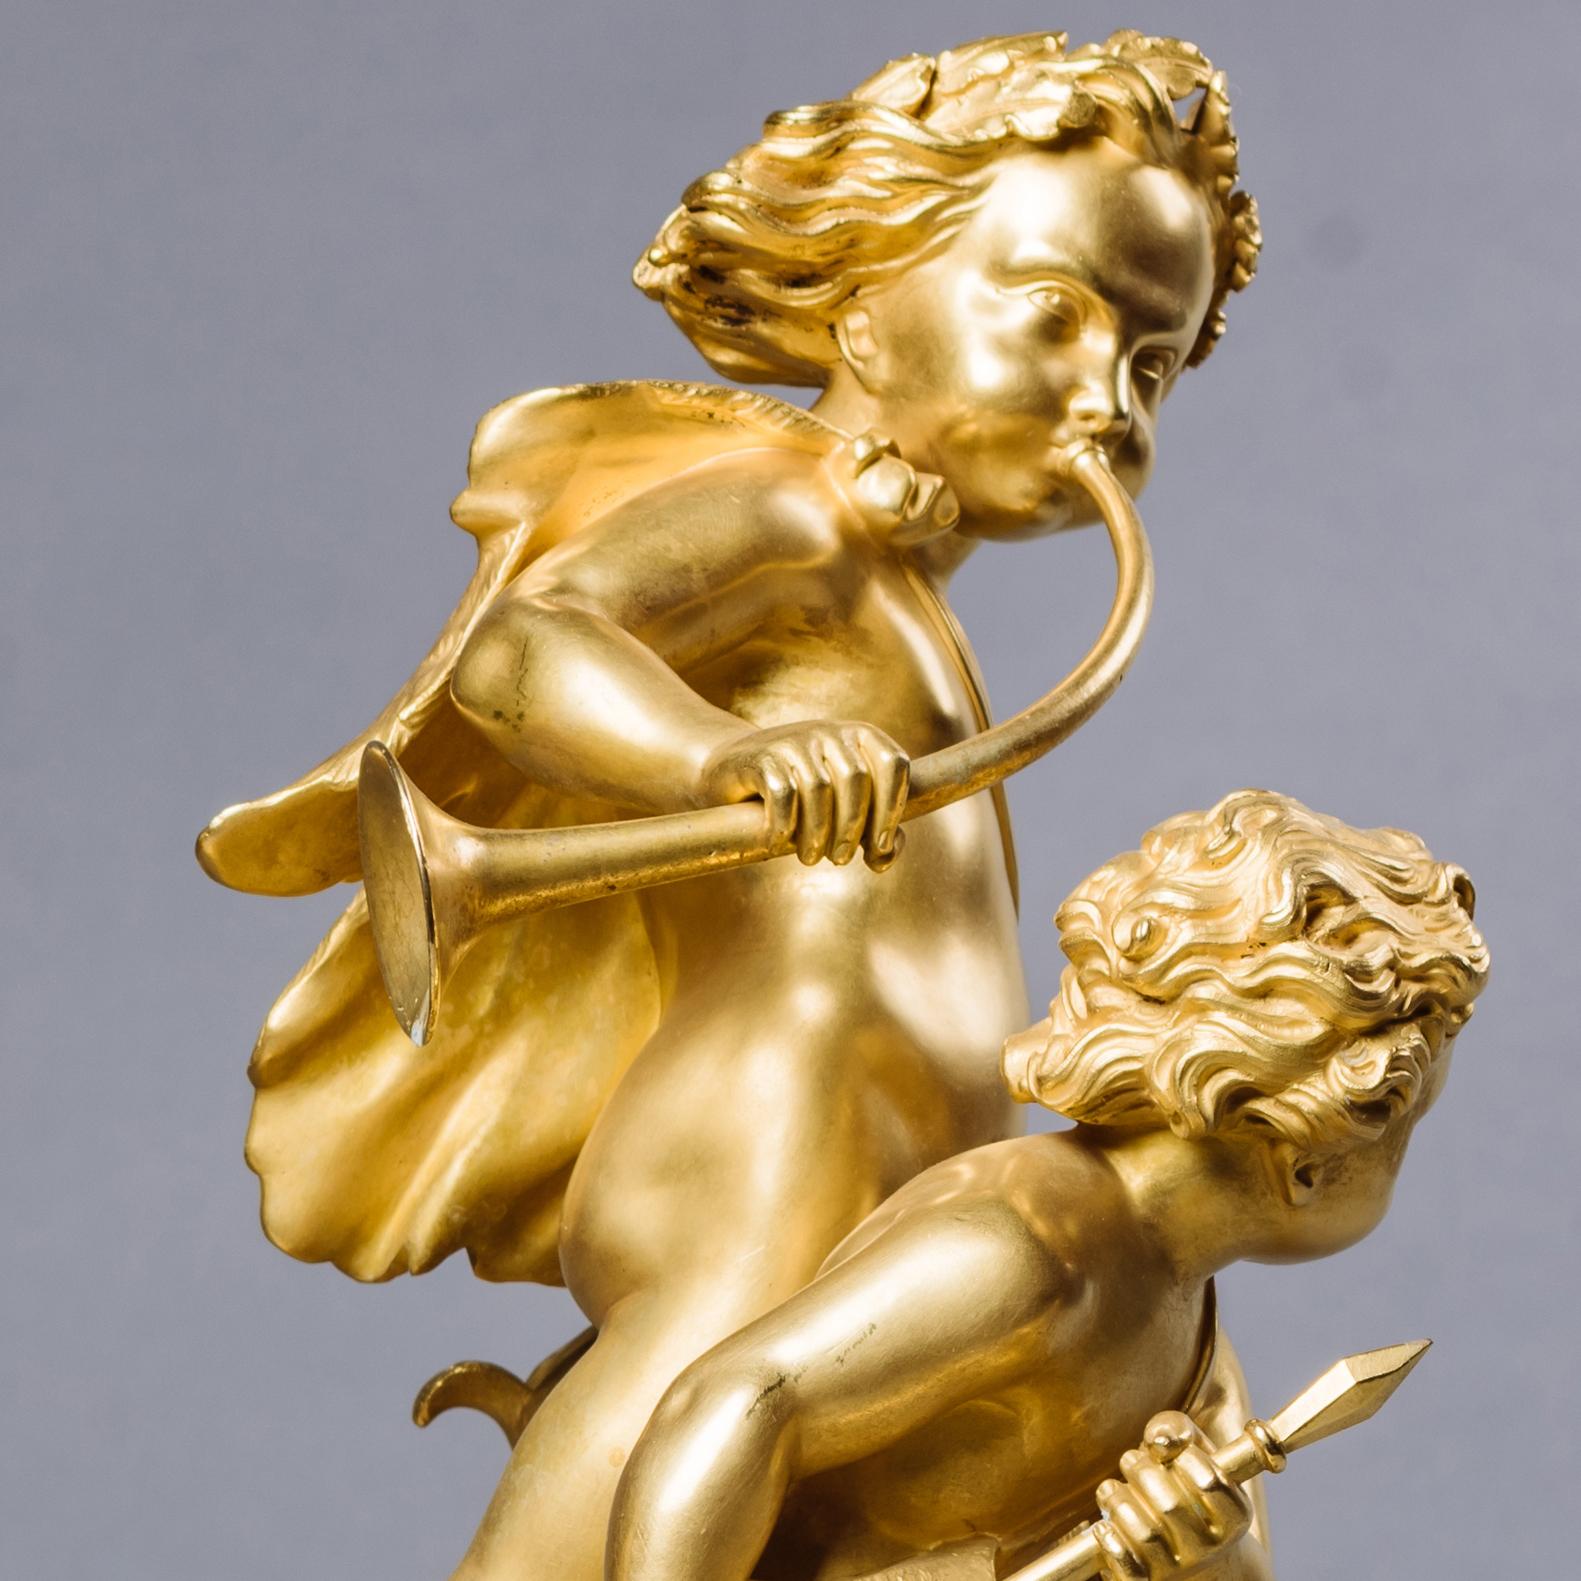 Ein außergewöhnliches Paar von vergoldeten Bronzefiguren aus der Restaurierungszeit, die die Jagd und den Fischfang darstellen.

Jede Gruppe steht auf einem naturalistisch modellierten Sockel und ist fein modelliert und ziseliert, mit einer